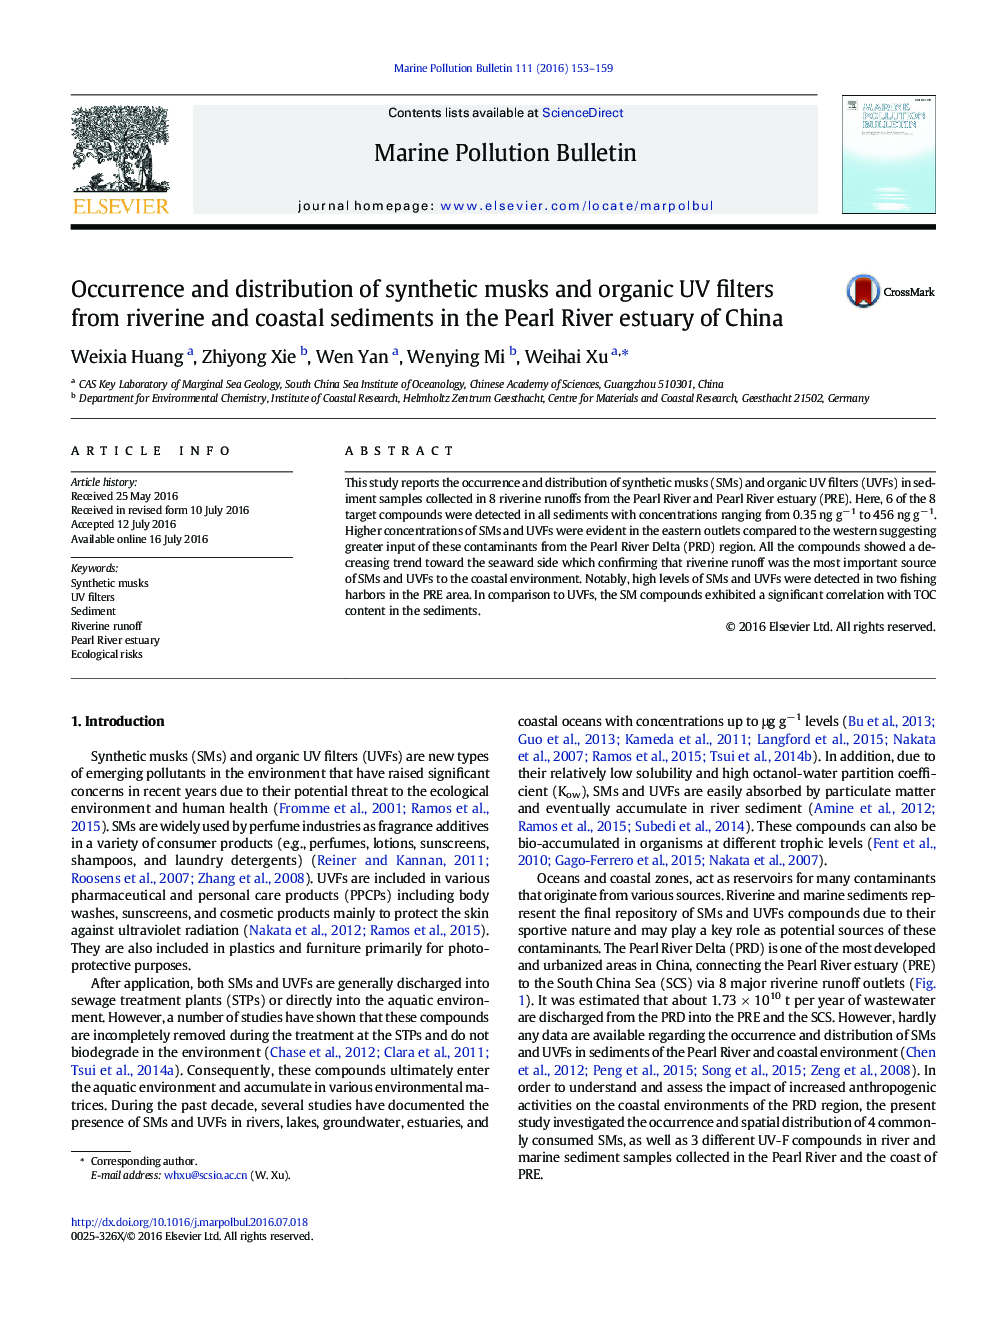 پیدایش و توزیع مشک مصنوعی و فیلترهای UV آلی از رودخانه و رسوبات ساحلی در مصب رودخانه مروارید چین